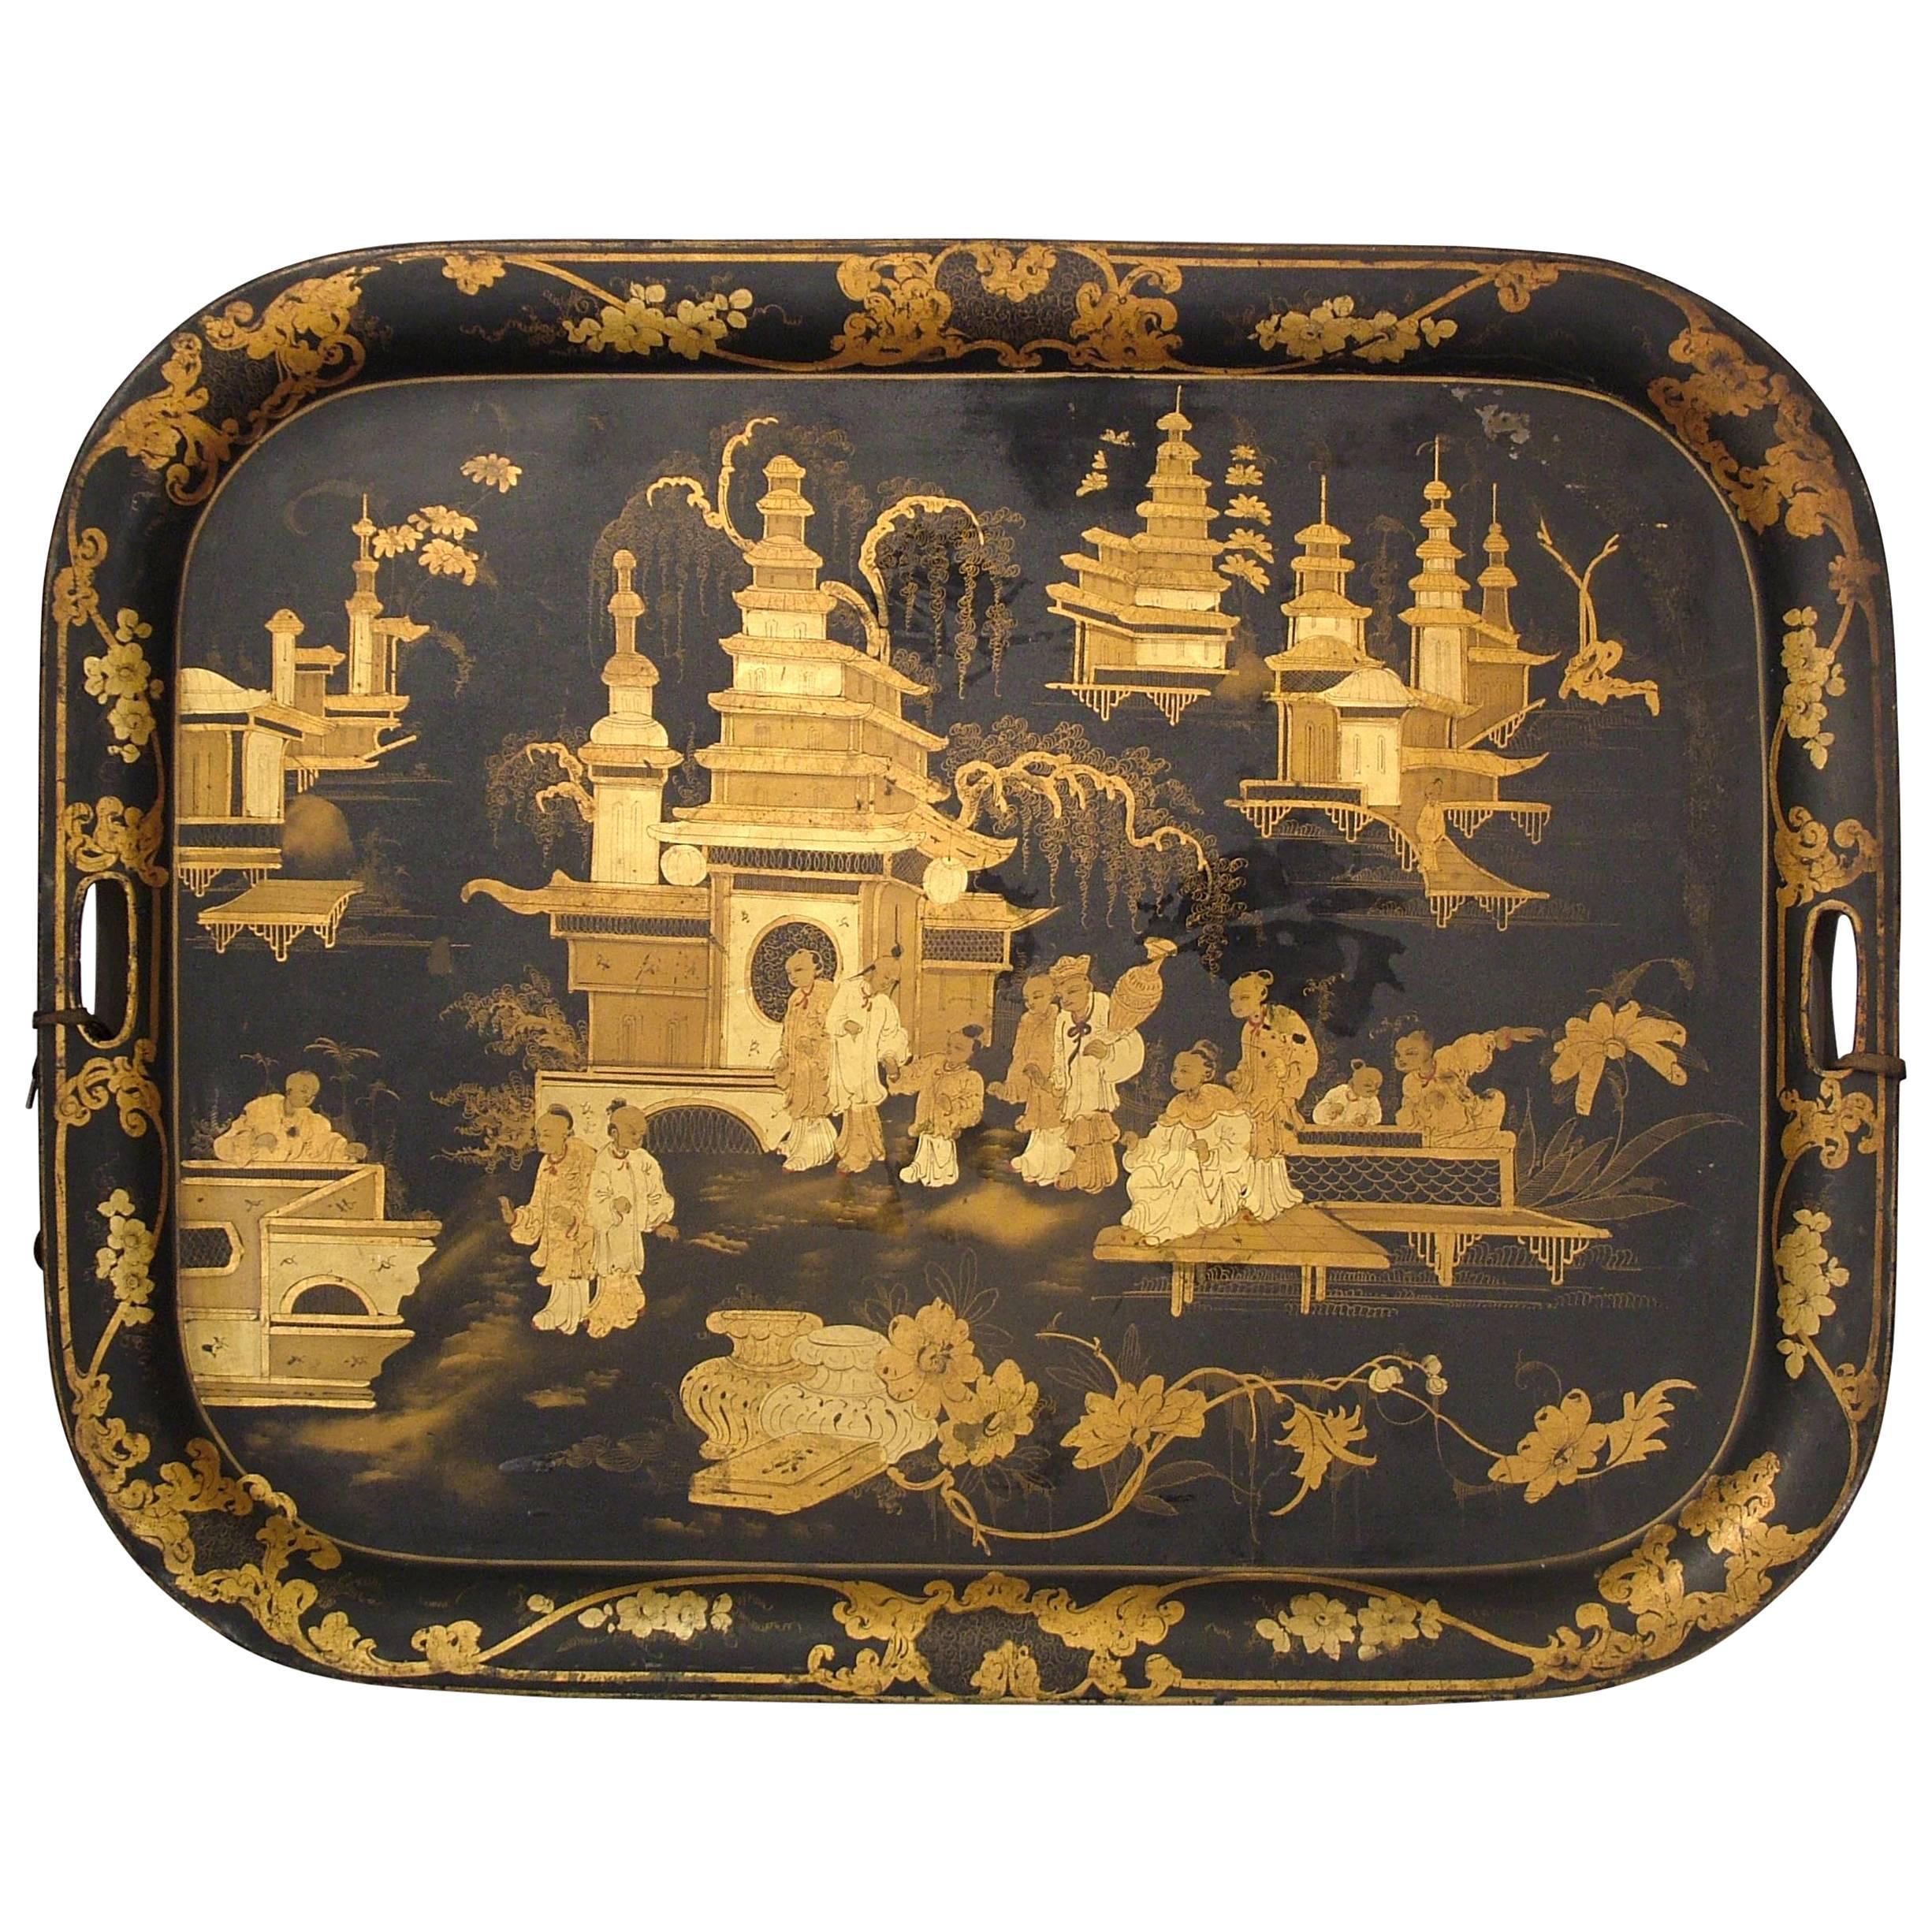 Englisches Chinoiserie-Tablett aus dem 19. Jahrhundert und vergoldetes Japantablett aus der Regency-Zeit 